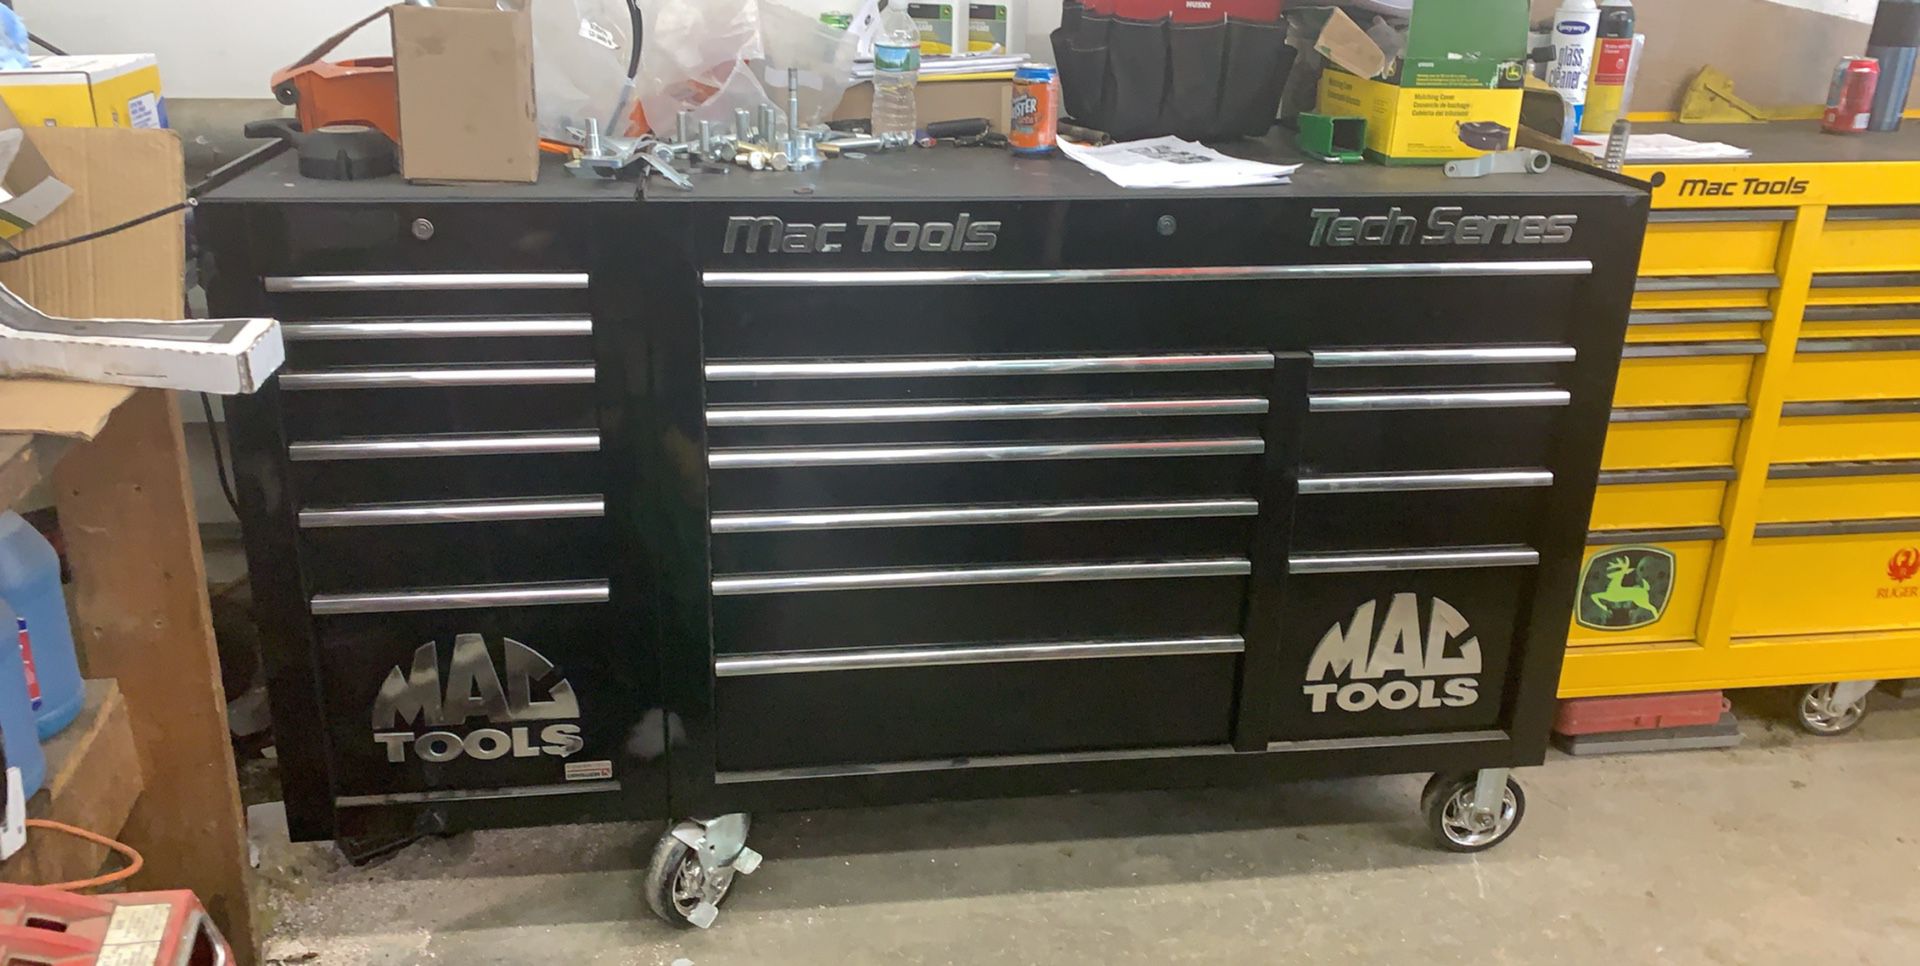 Mac tools toolbox